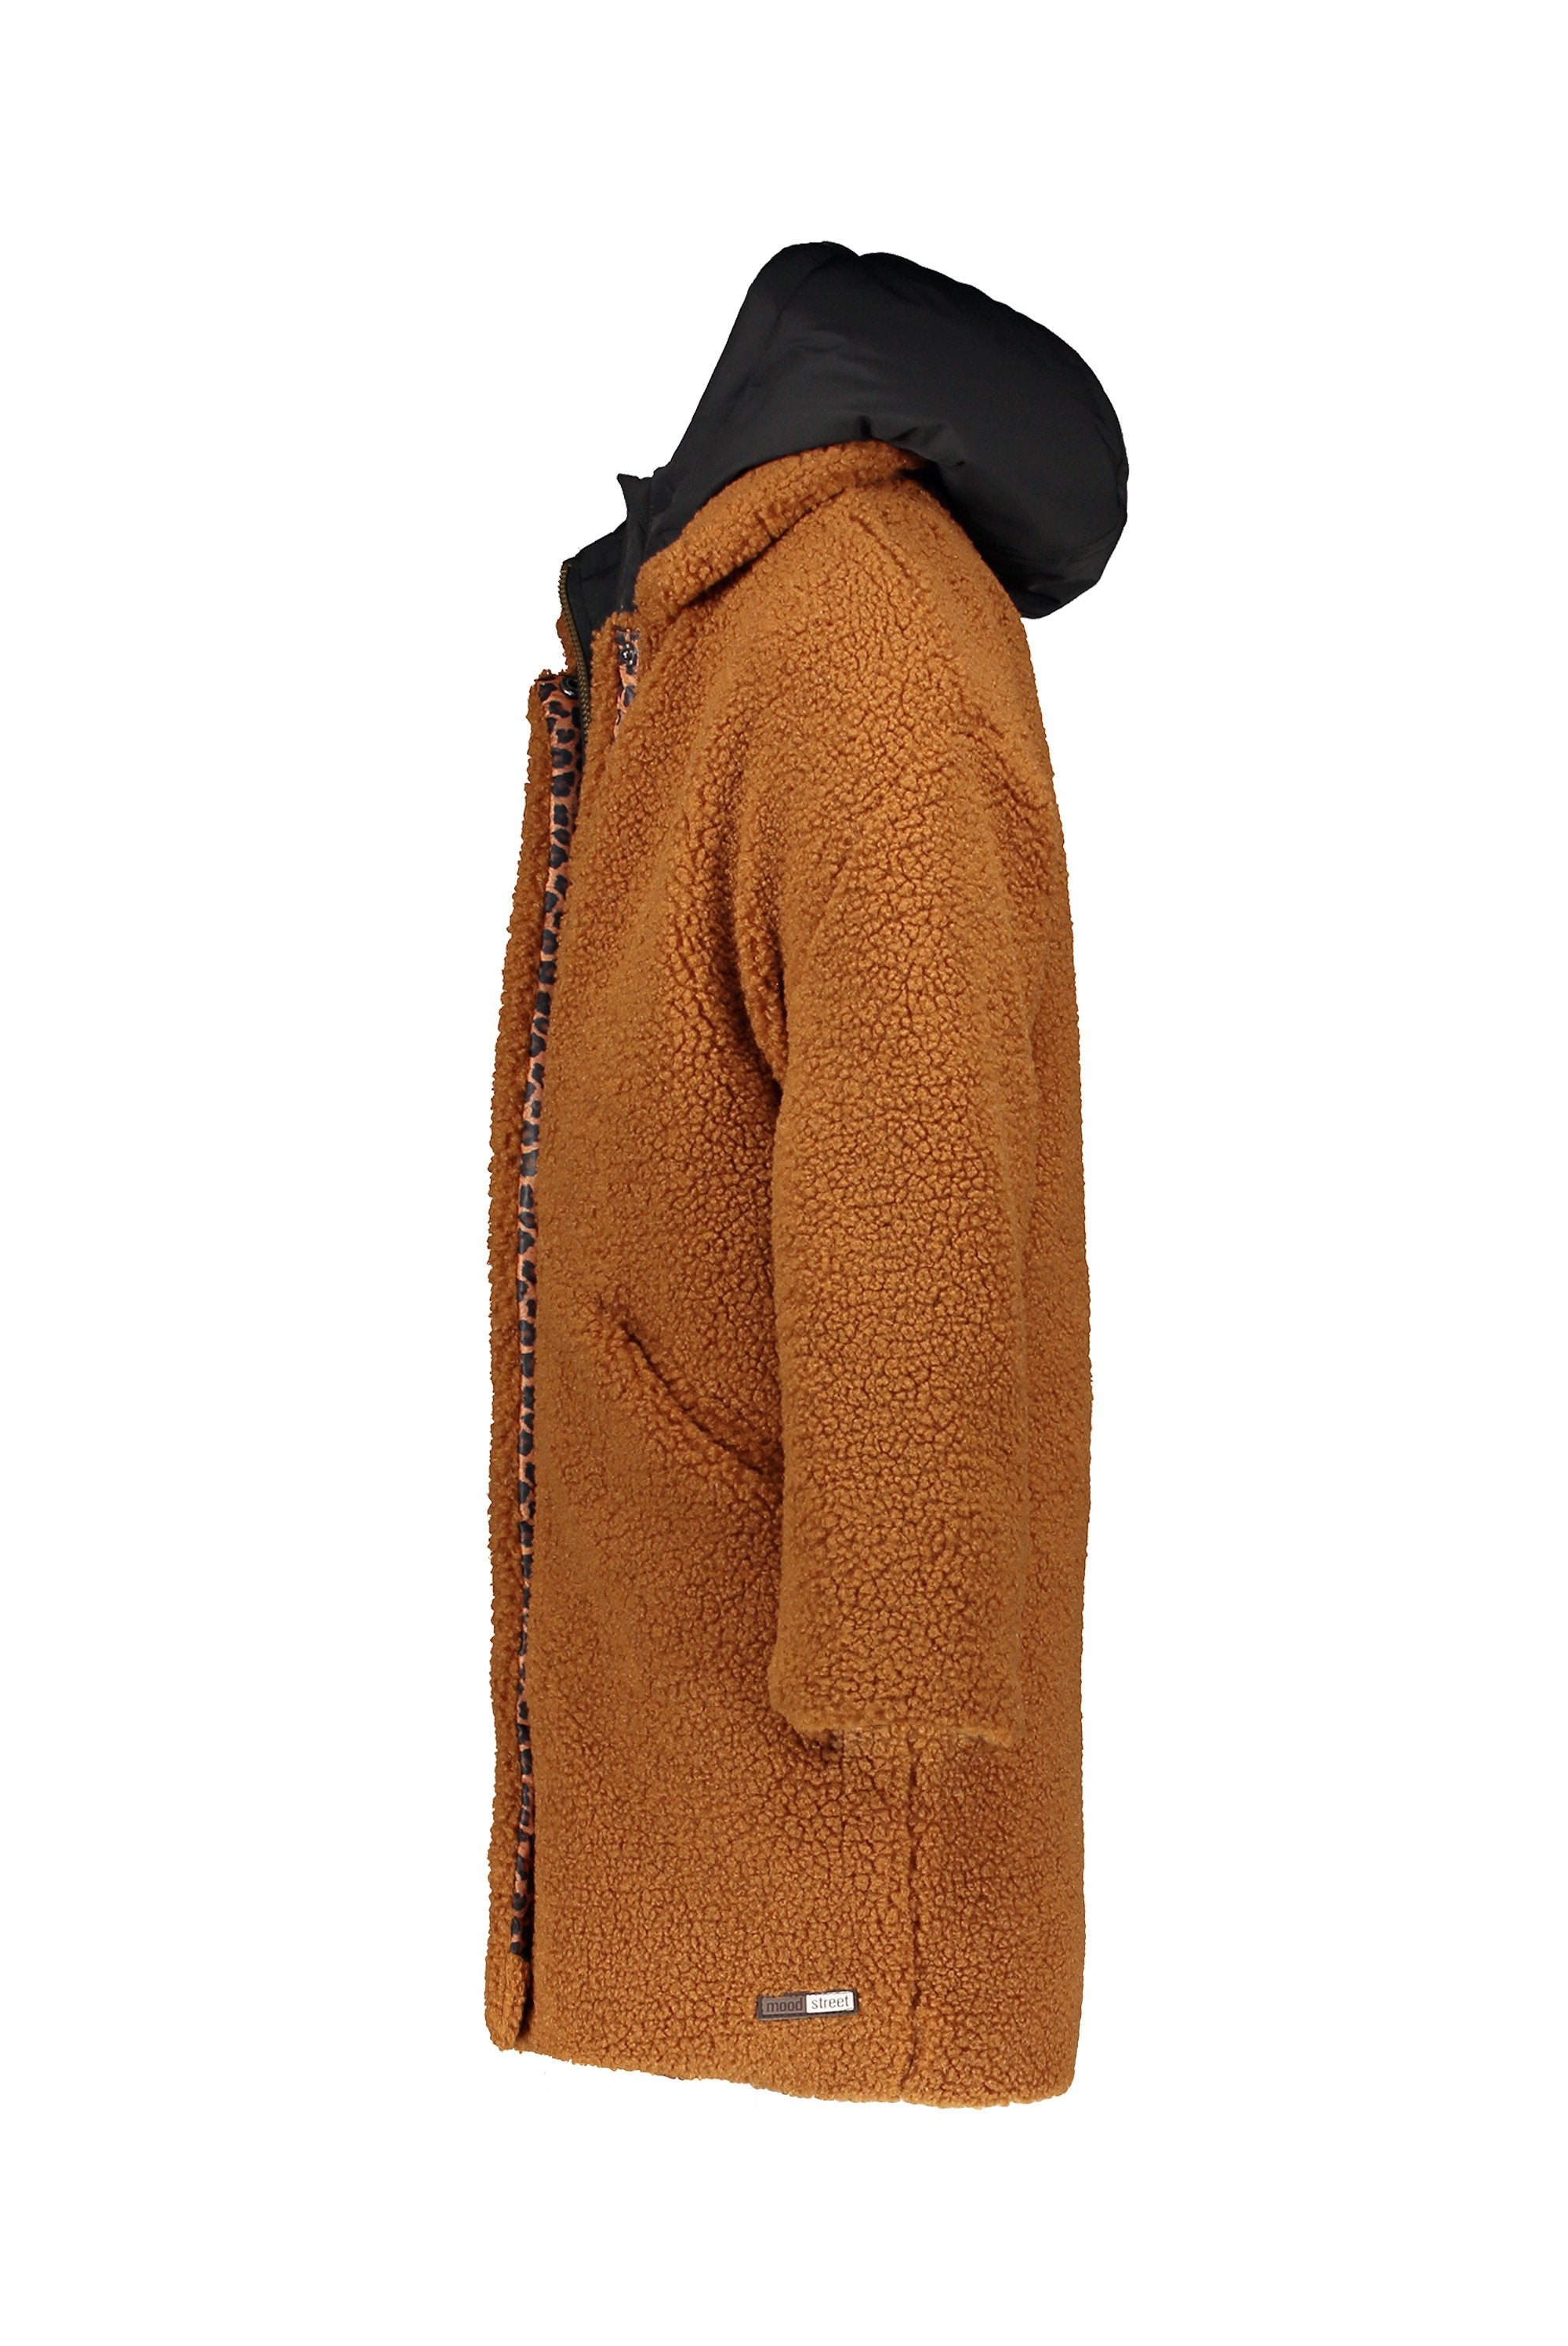 Meisjes MT fancy coat van Moodstreet in de kleur Rust in maat 158-164.